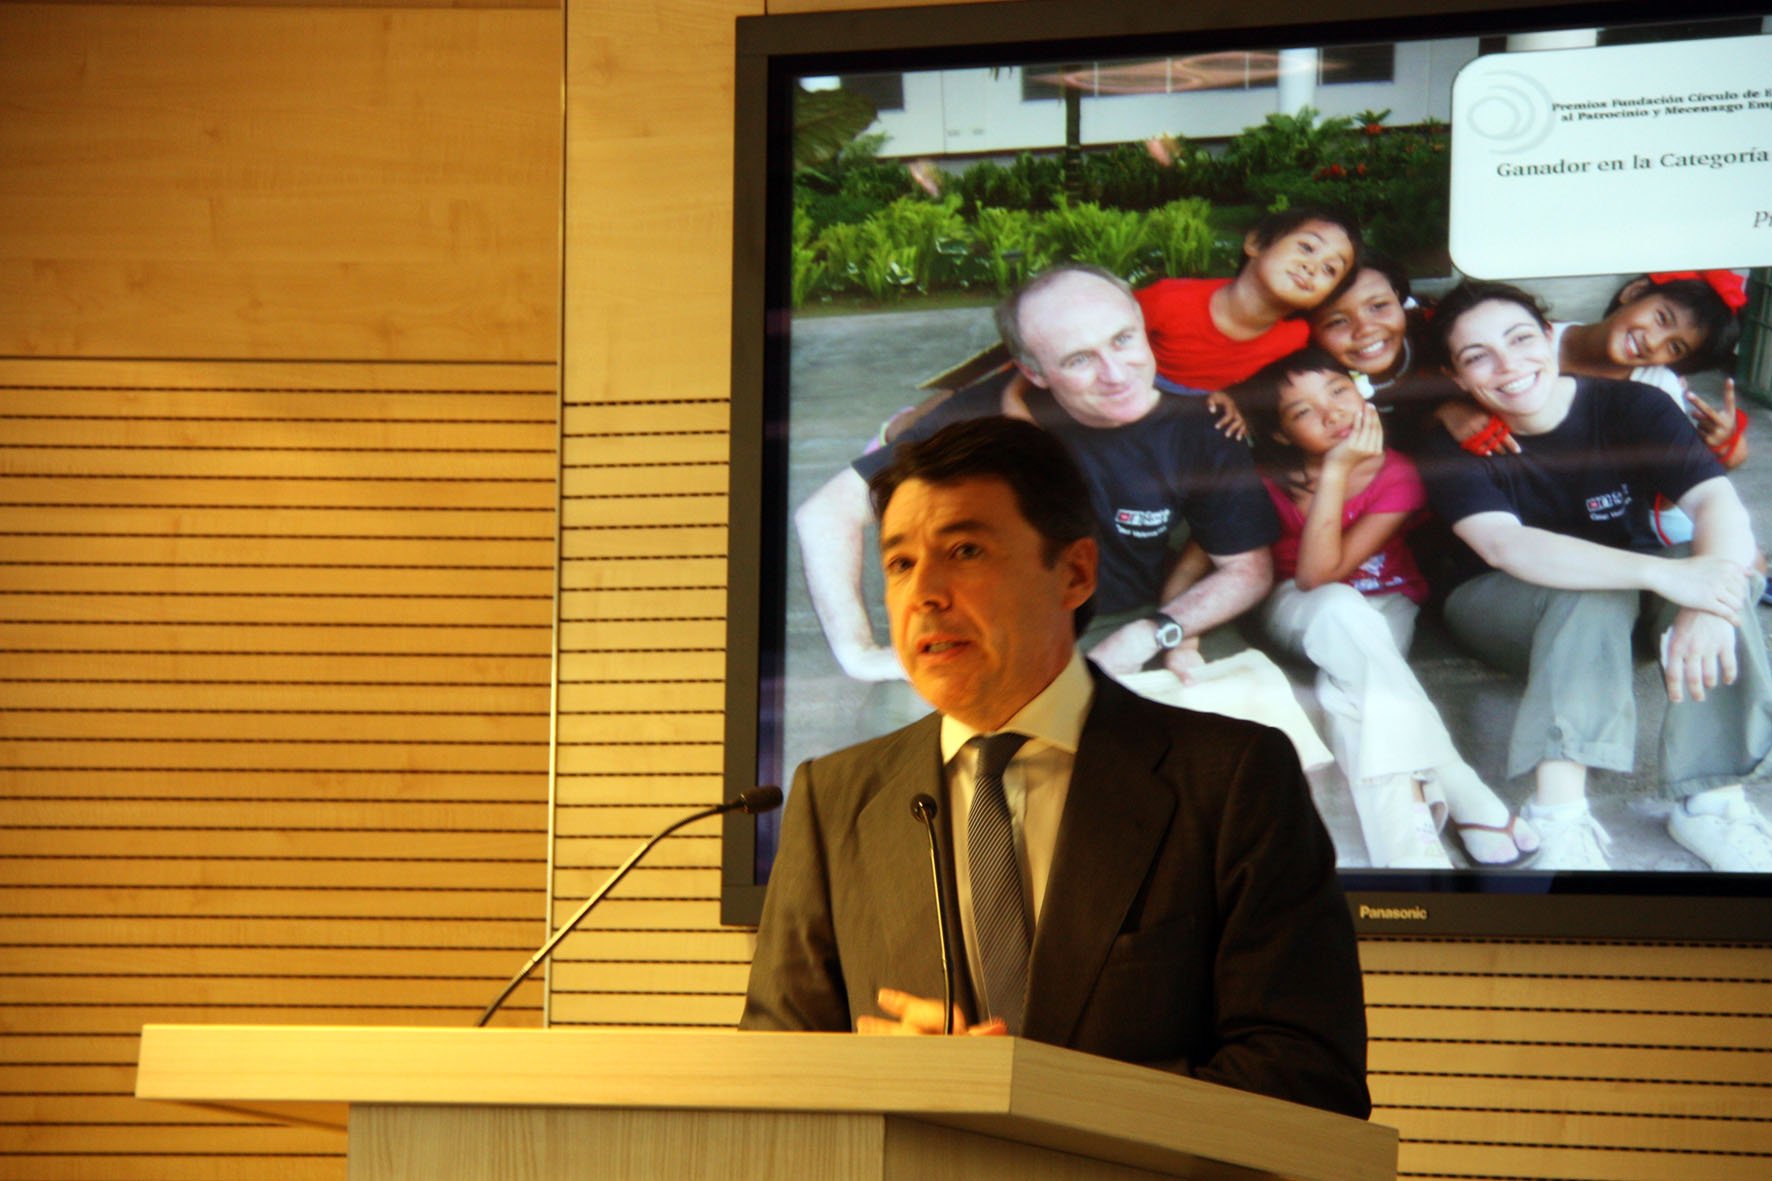 Las adjudicaciones de obra pública en Madrid se controlaban desde Génova, según González